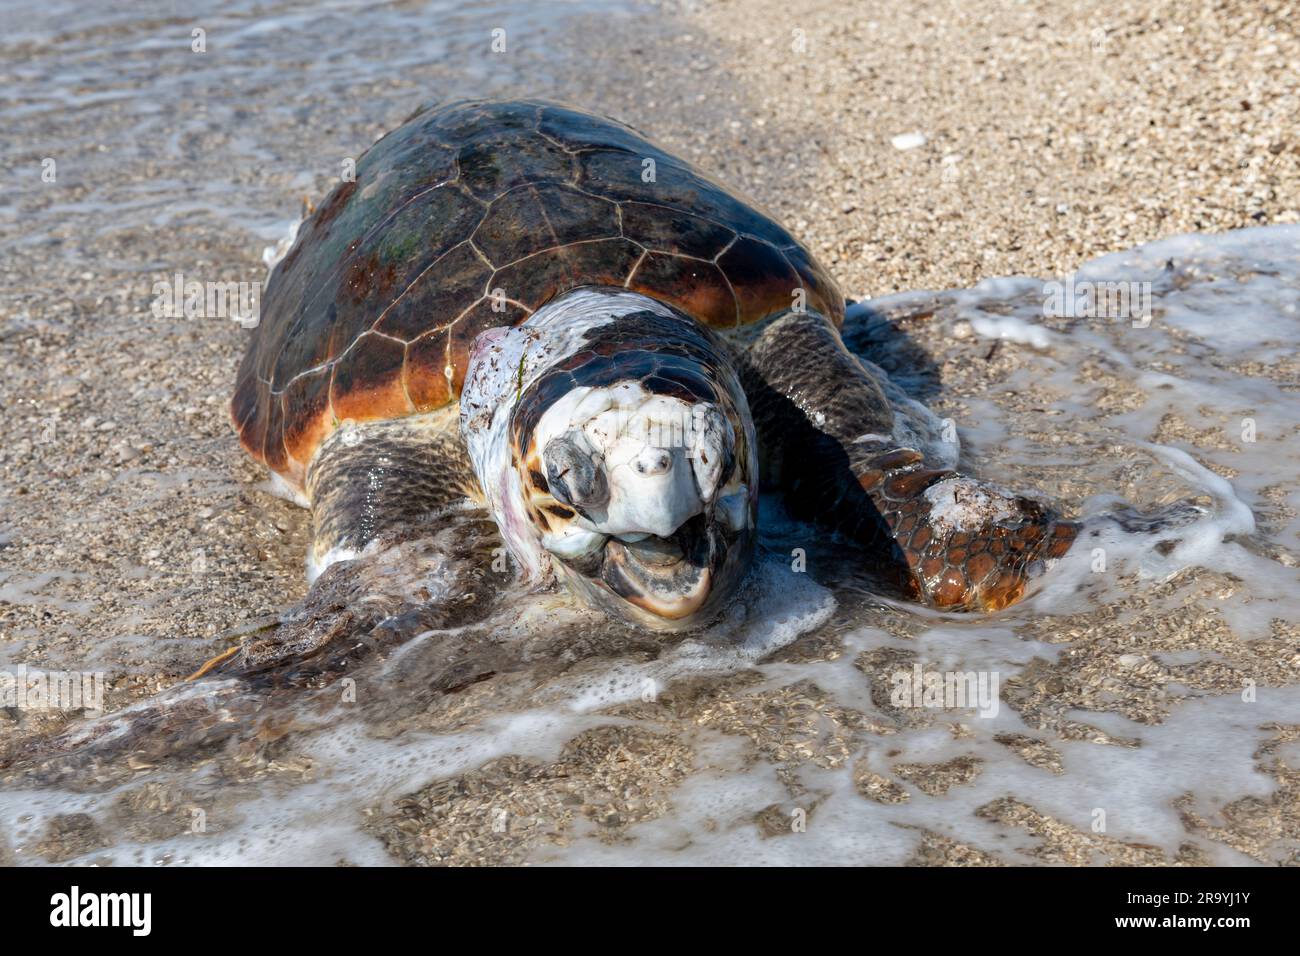 Eine tote, aufgeblähte Loggerhead-Schildkröte wurde am Strand angespült. Stockfoto